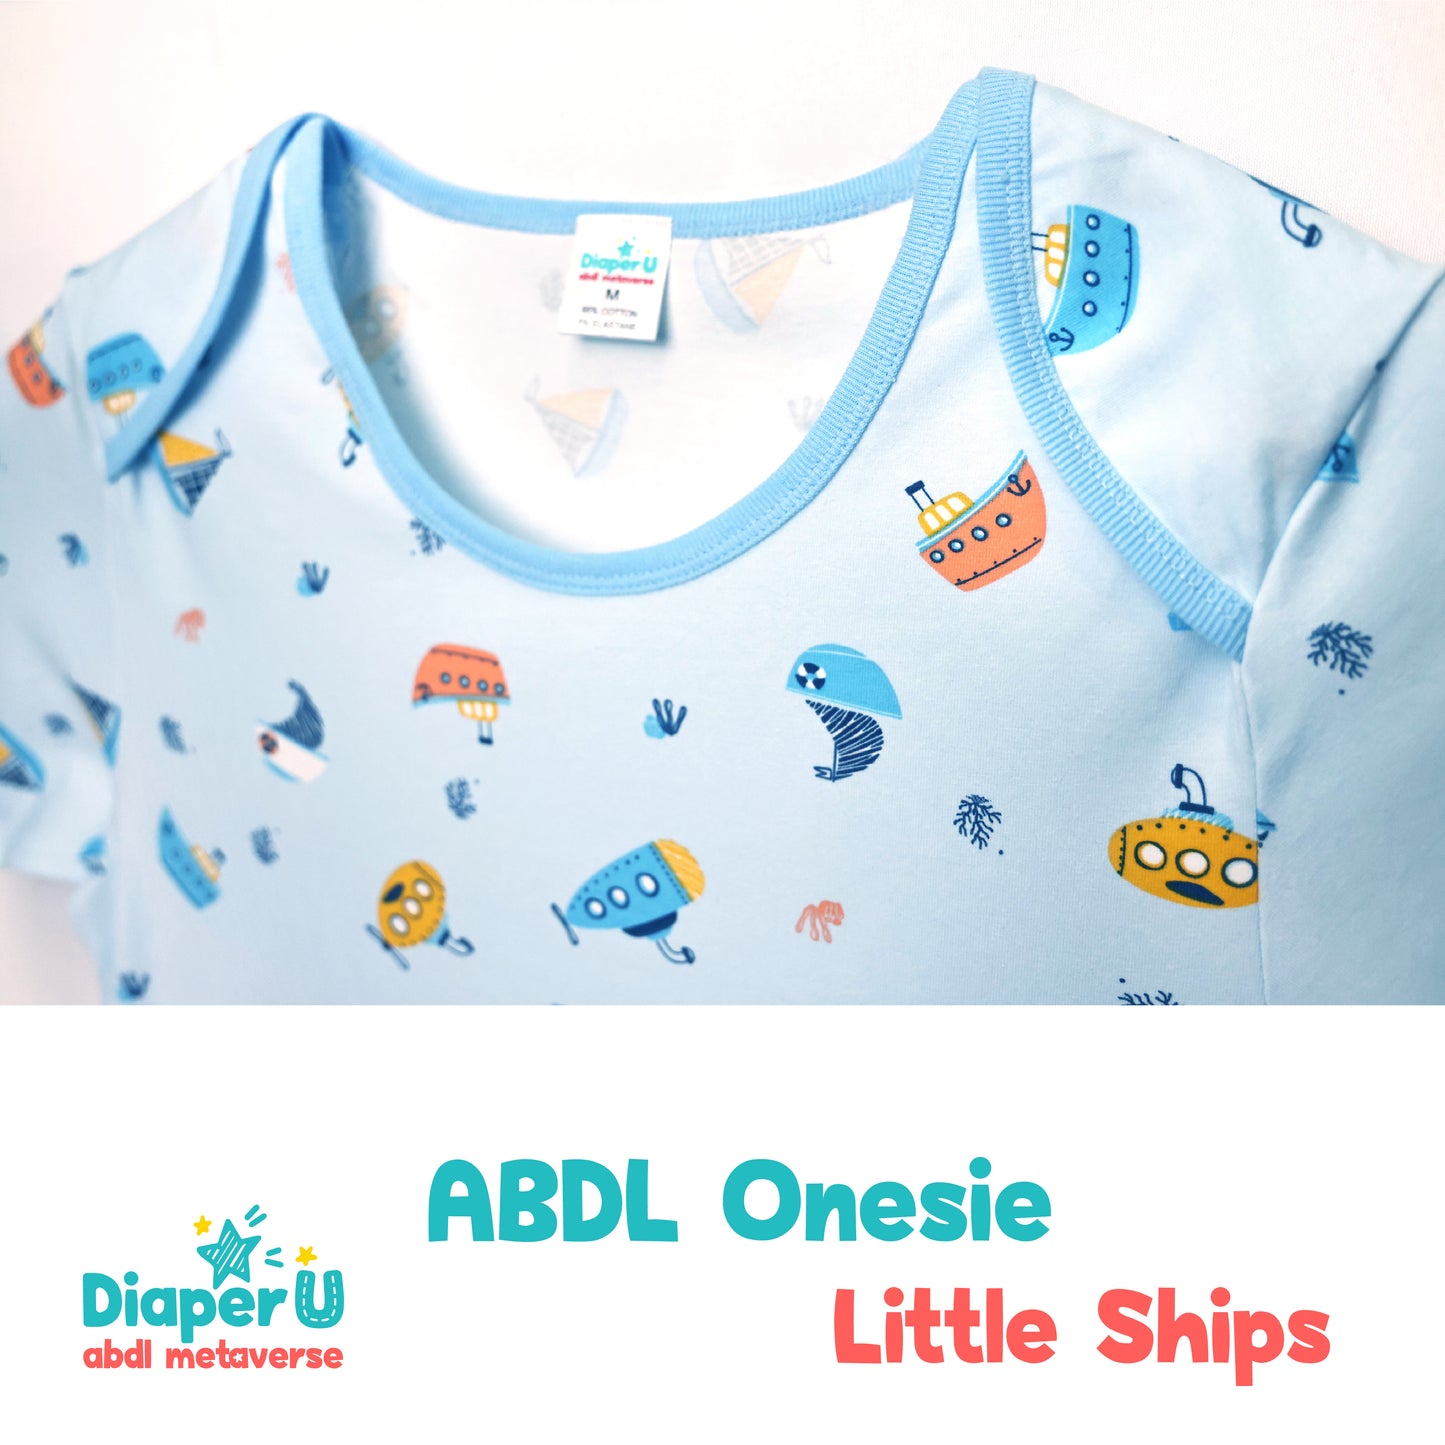 ABDL Onesie - Little Ships